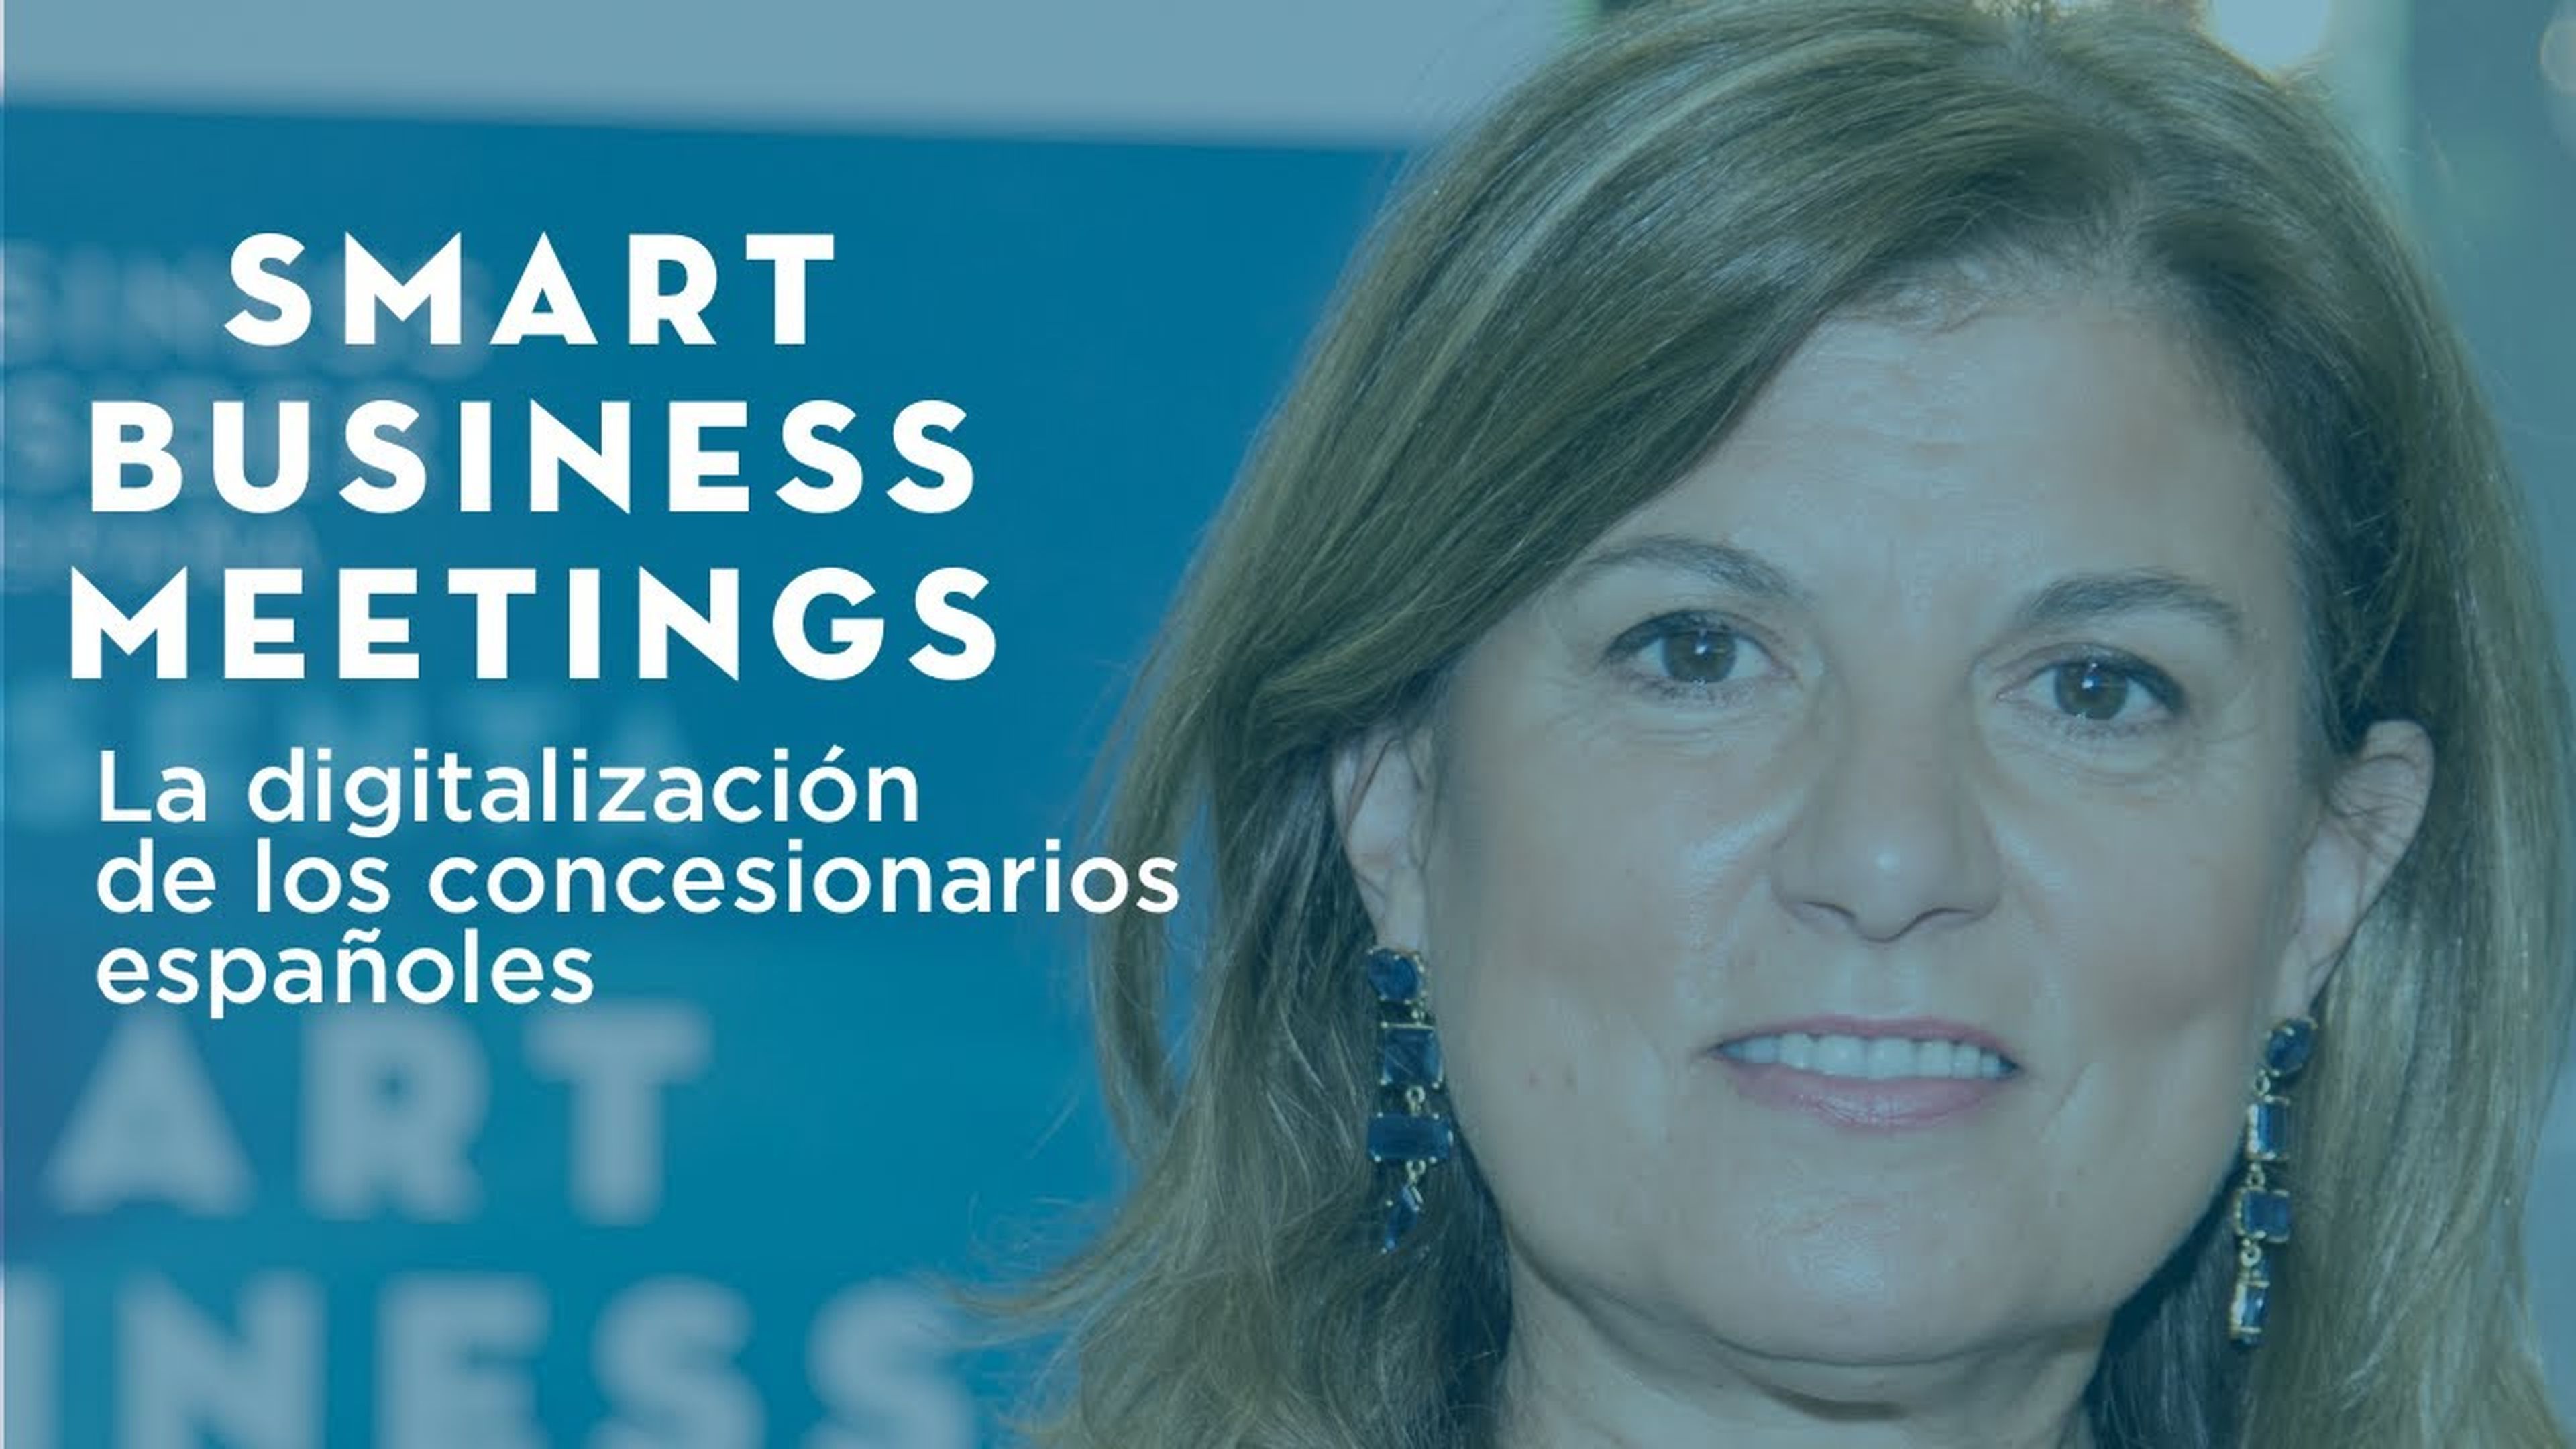 La digitalización de los concesionarios españoles | IX SMART BUSINESS MEETING